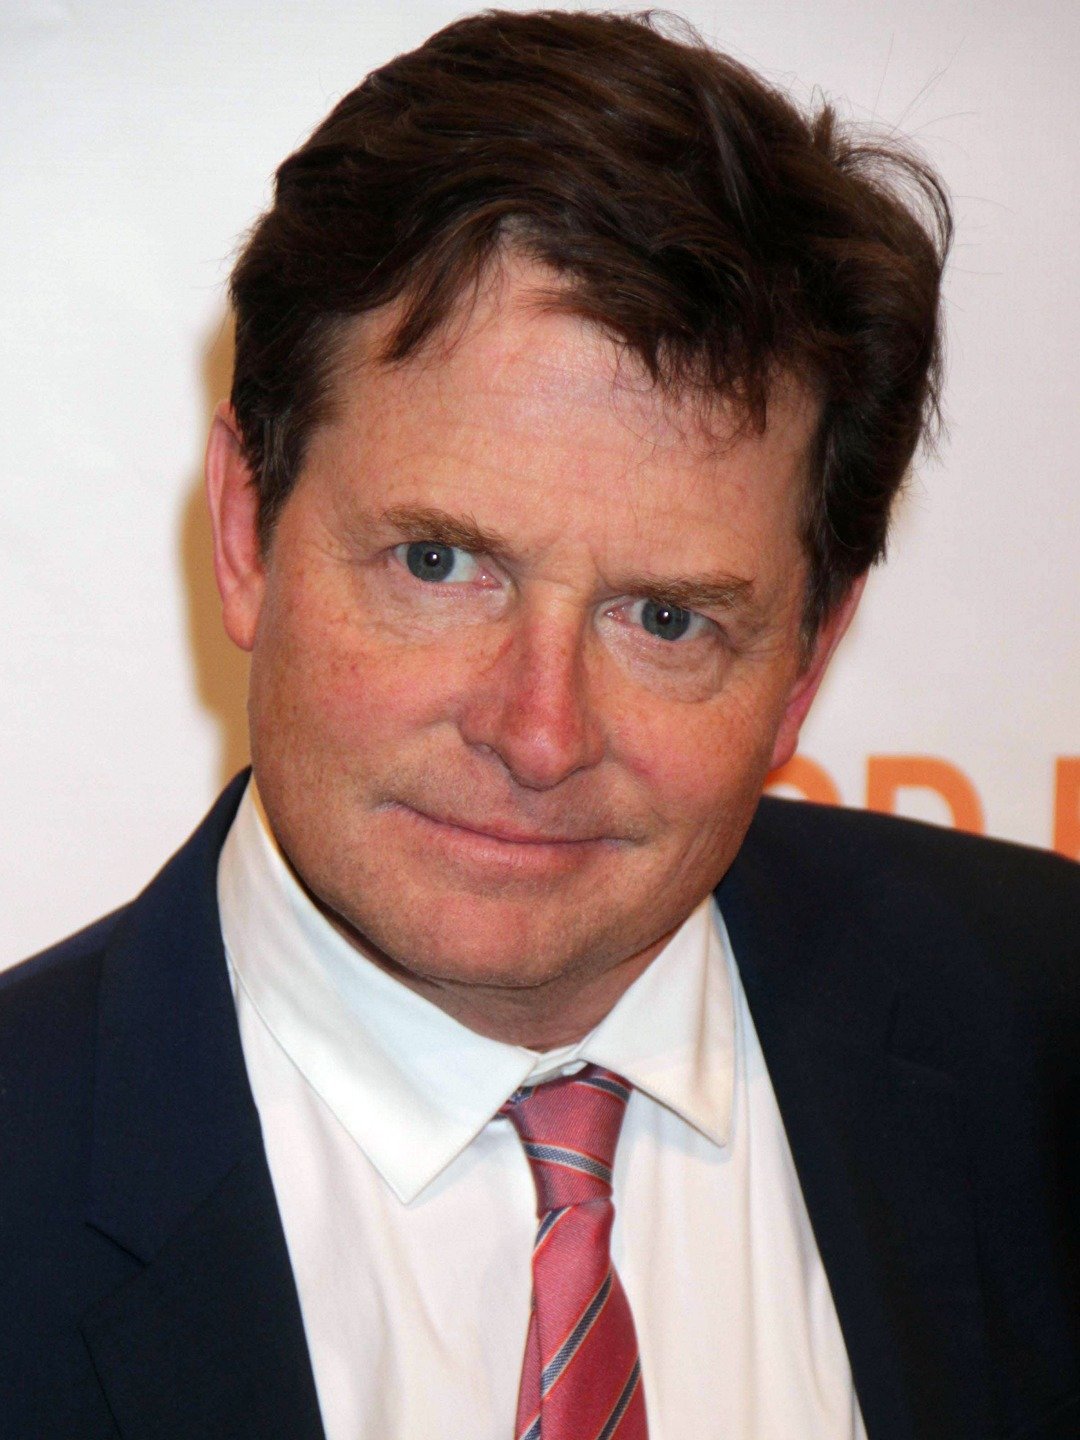 How tall is Michael J Fox?